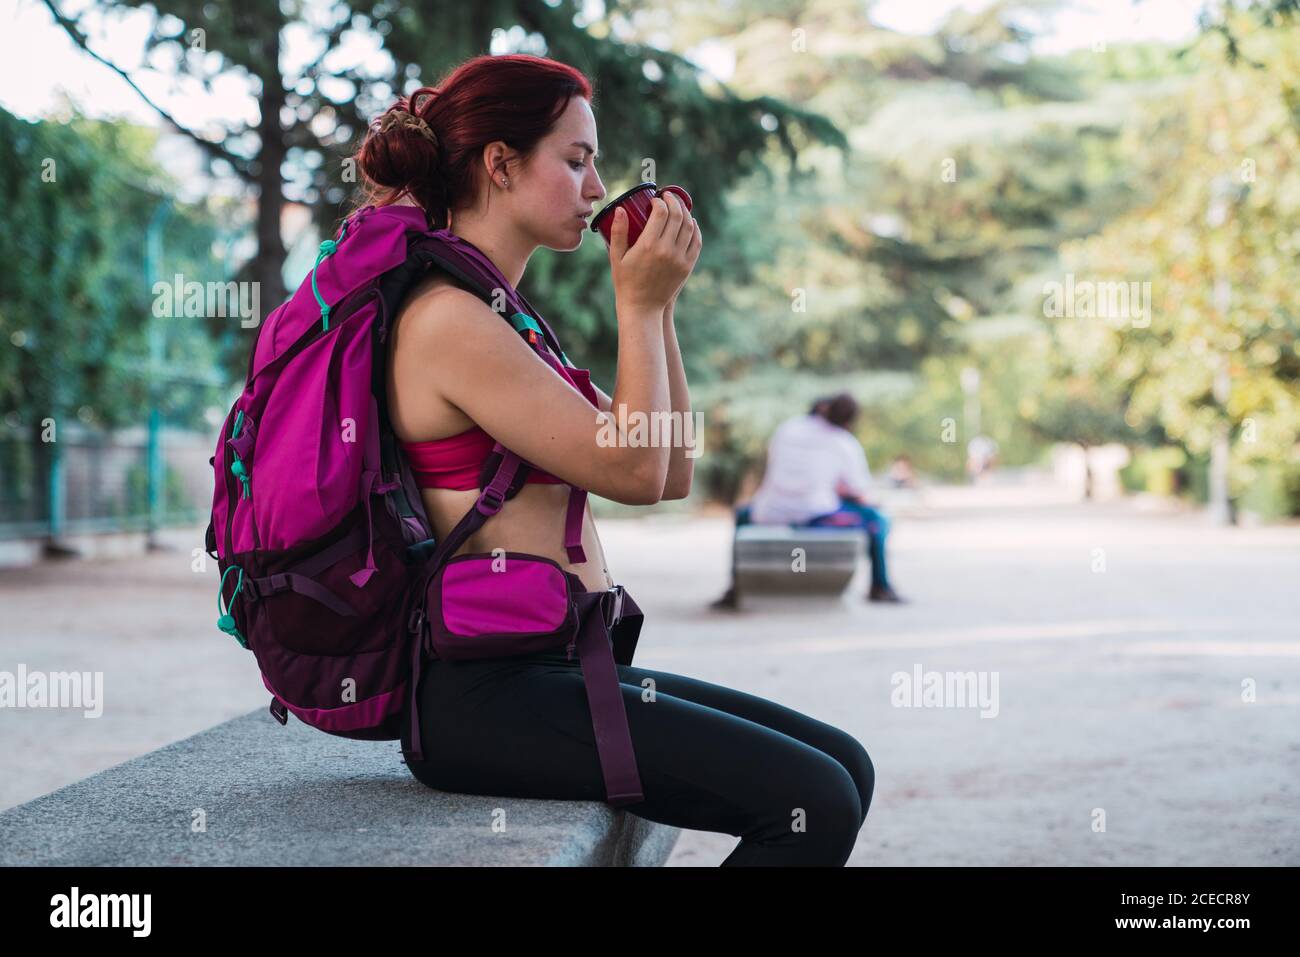 Seitenansicht einer schönen Frau in Sportkleidung mit großem rosafarbenem Rucksack, die auf einer Bank im Park sitzt und heißen Tee aus einer Metalltasse trinkt Stockfoto